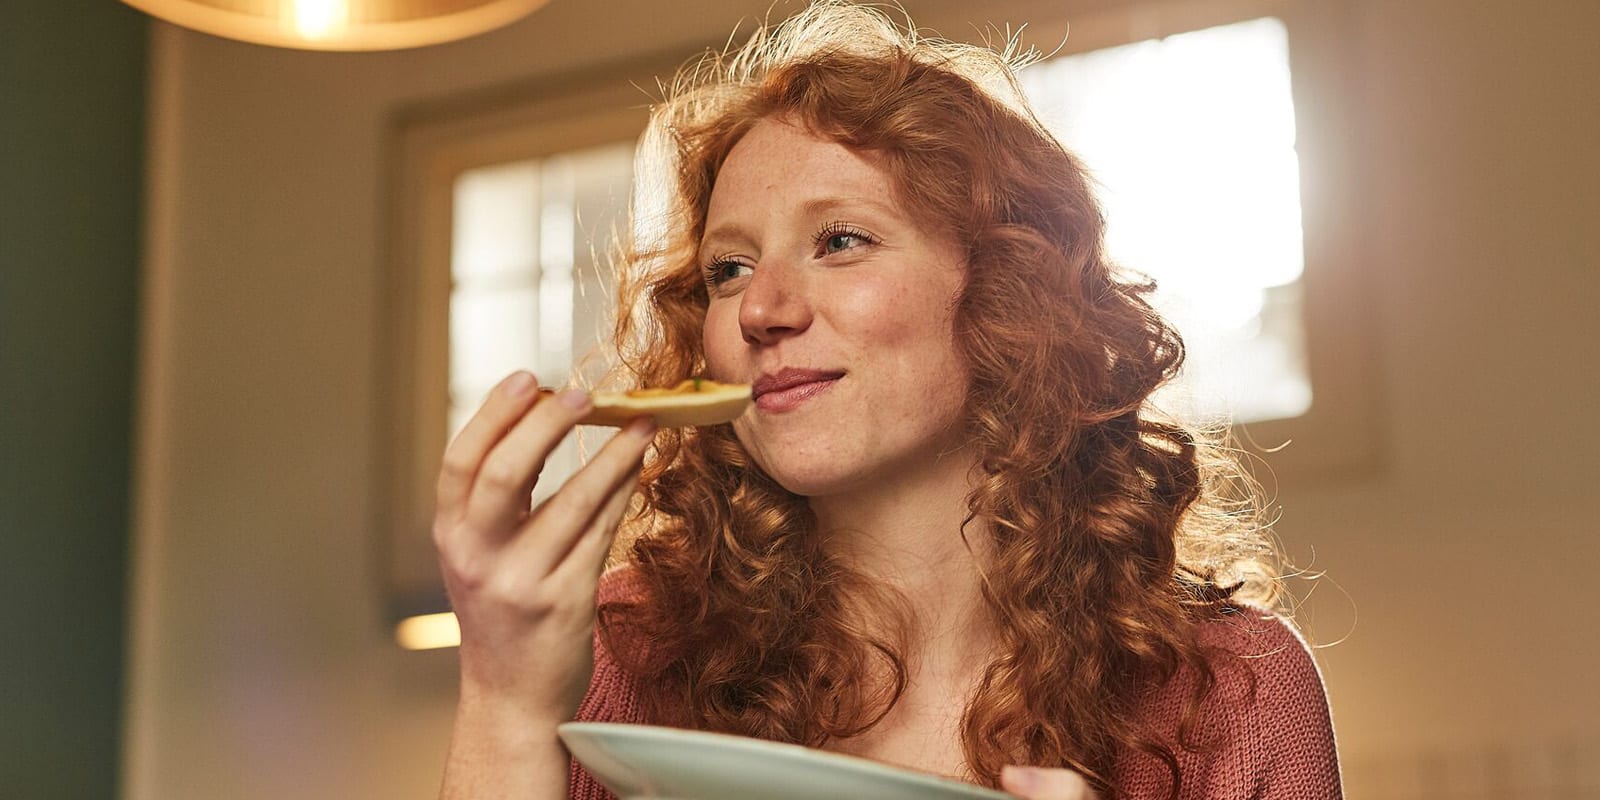 Junge Frau mit roten Haaren isst ein Stück Pizza.